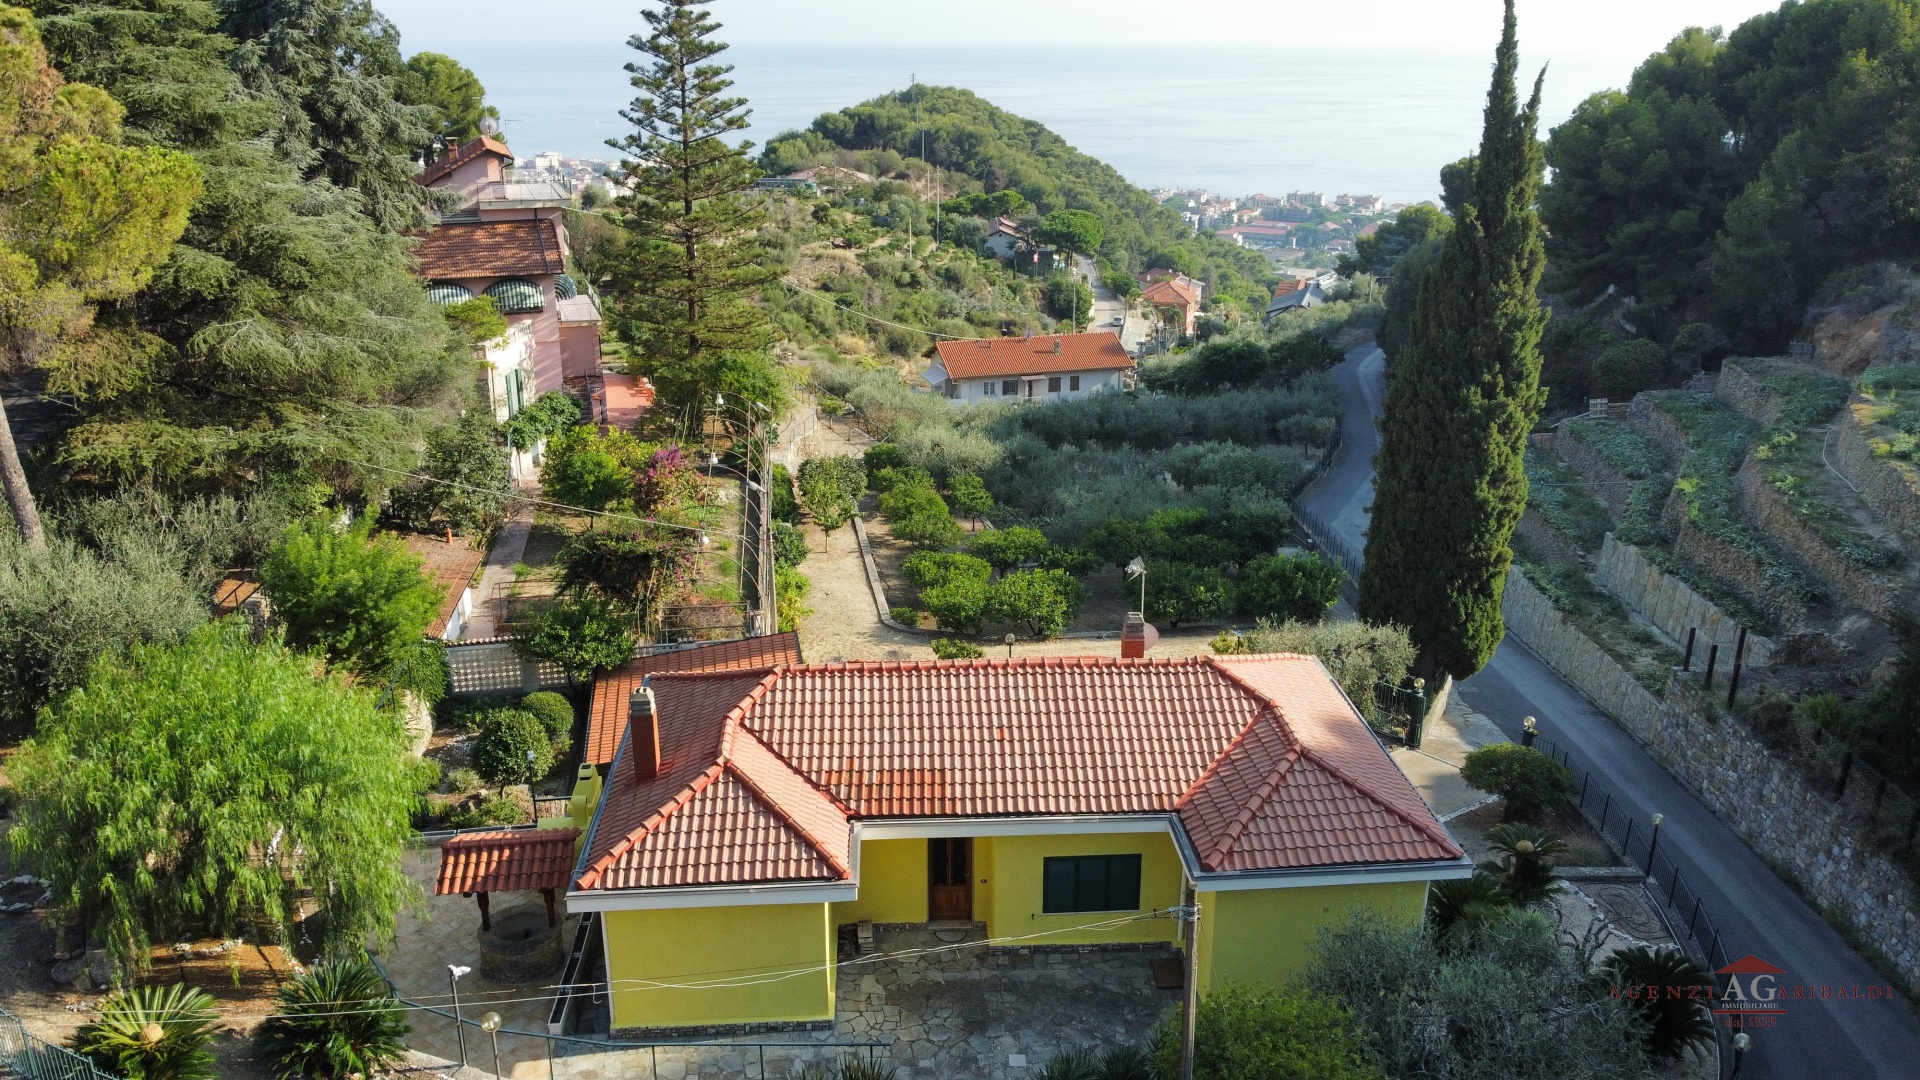 Villa in vendita a Vallecrosia, 5 locali, prezzo € 690.000 | PortaleAgenzieImmobiliari.it